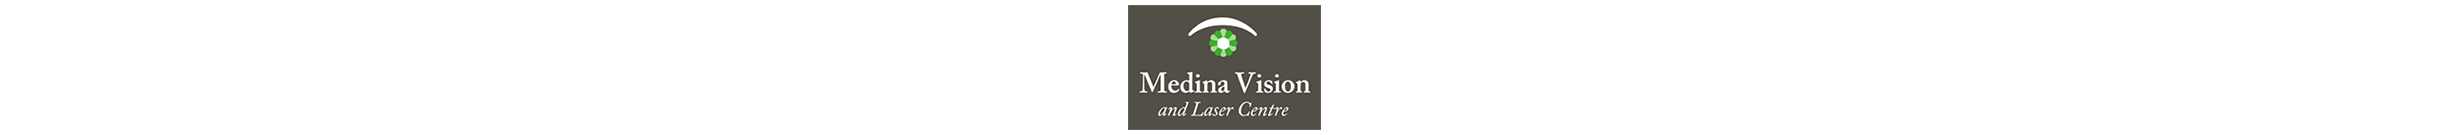 Medina Vision & Laser